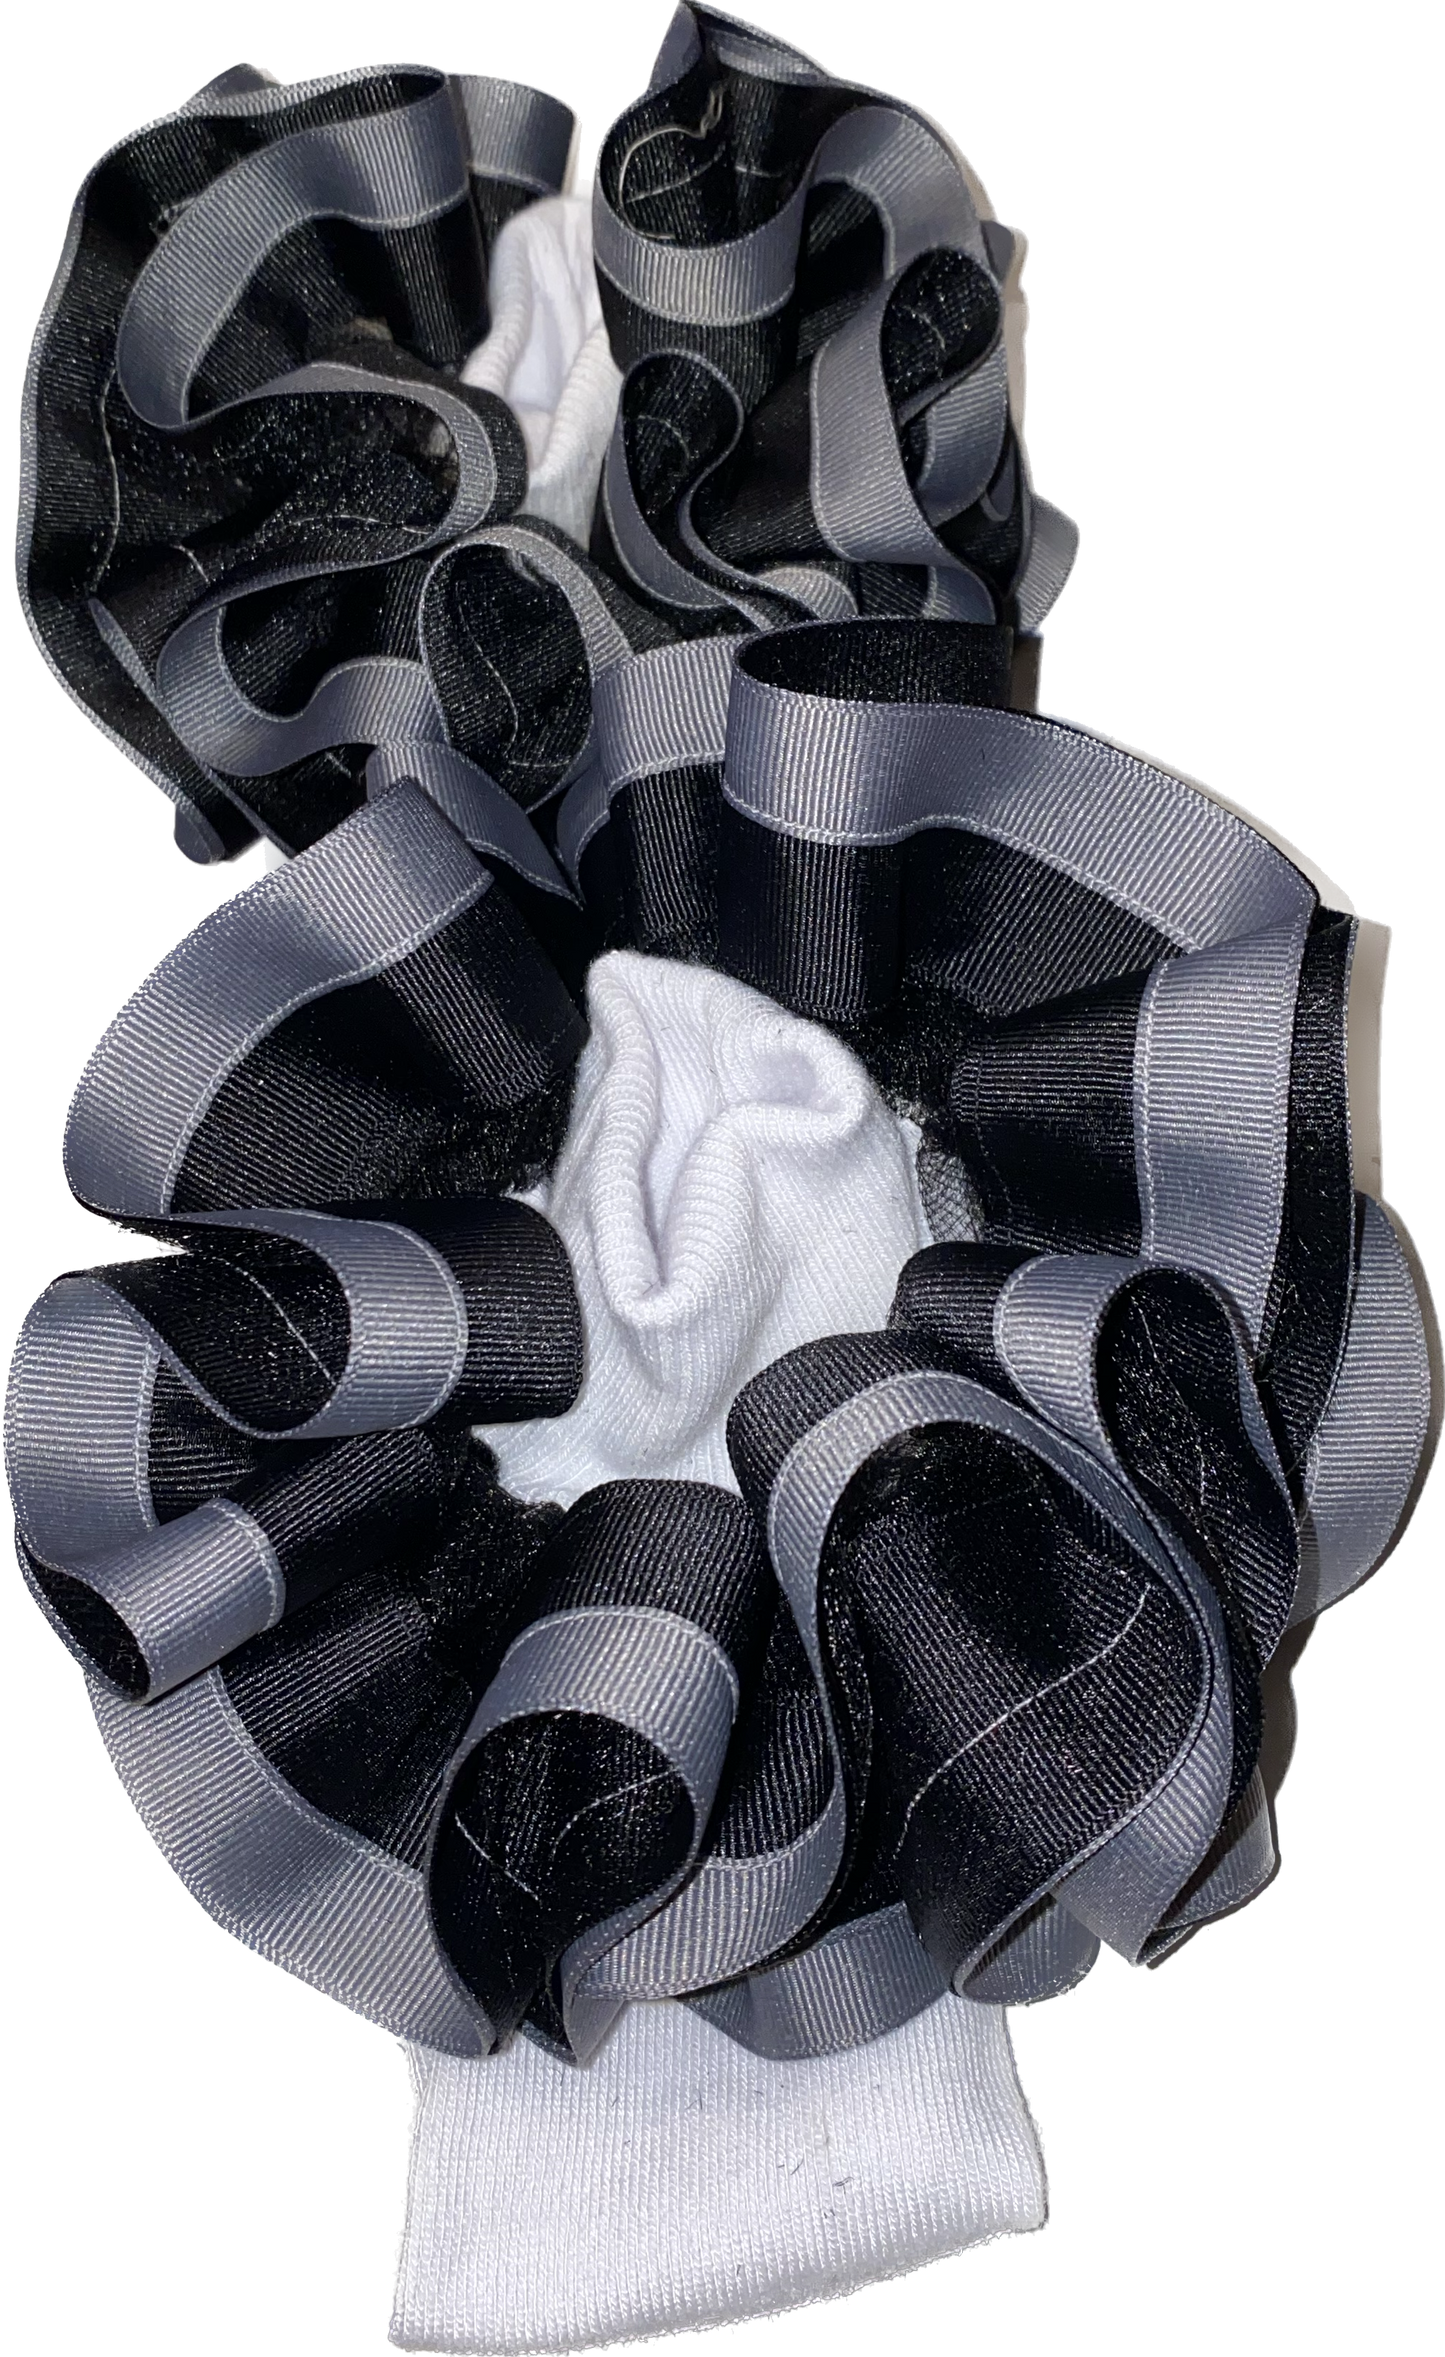 Black & Chrome Ruffle Socks